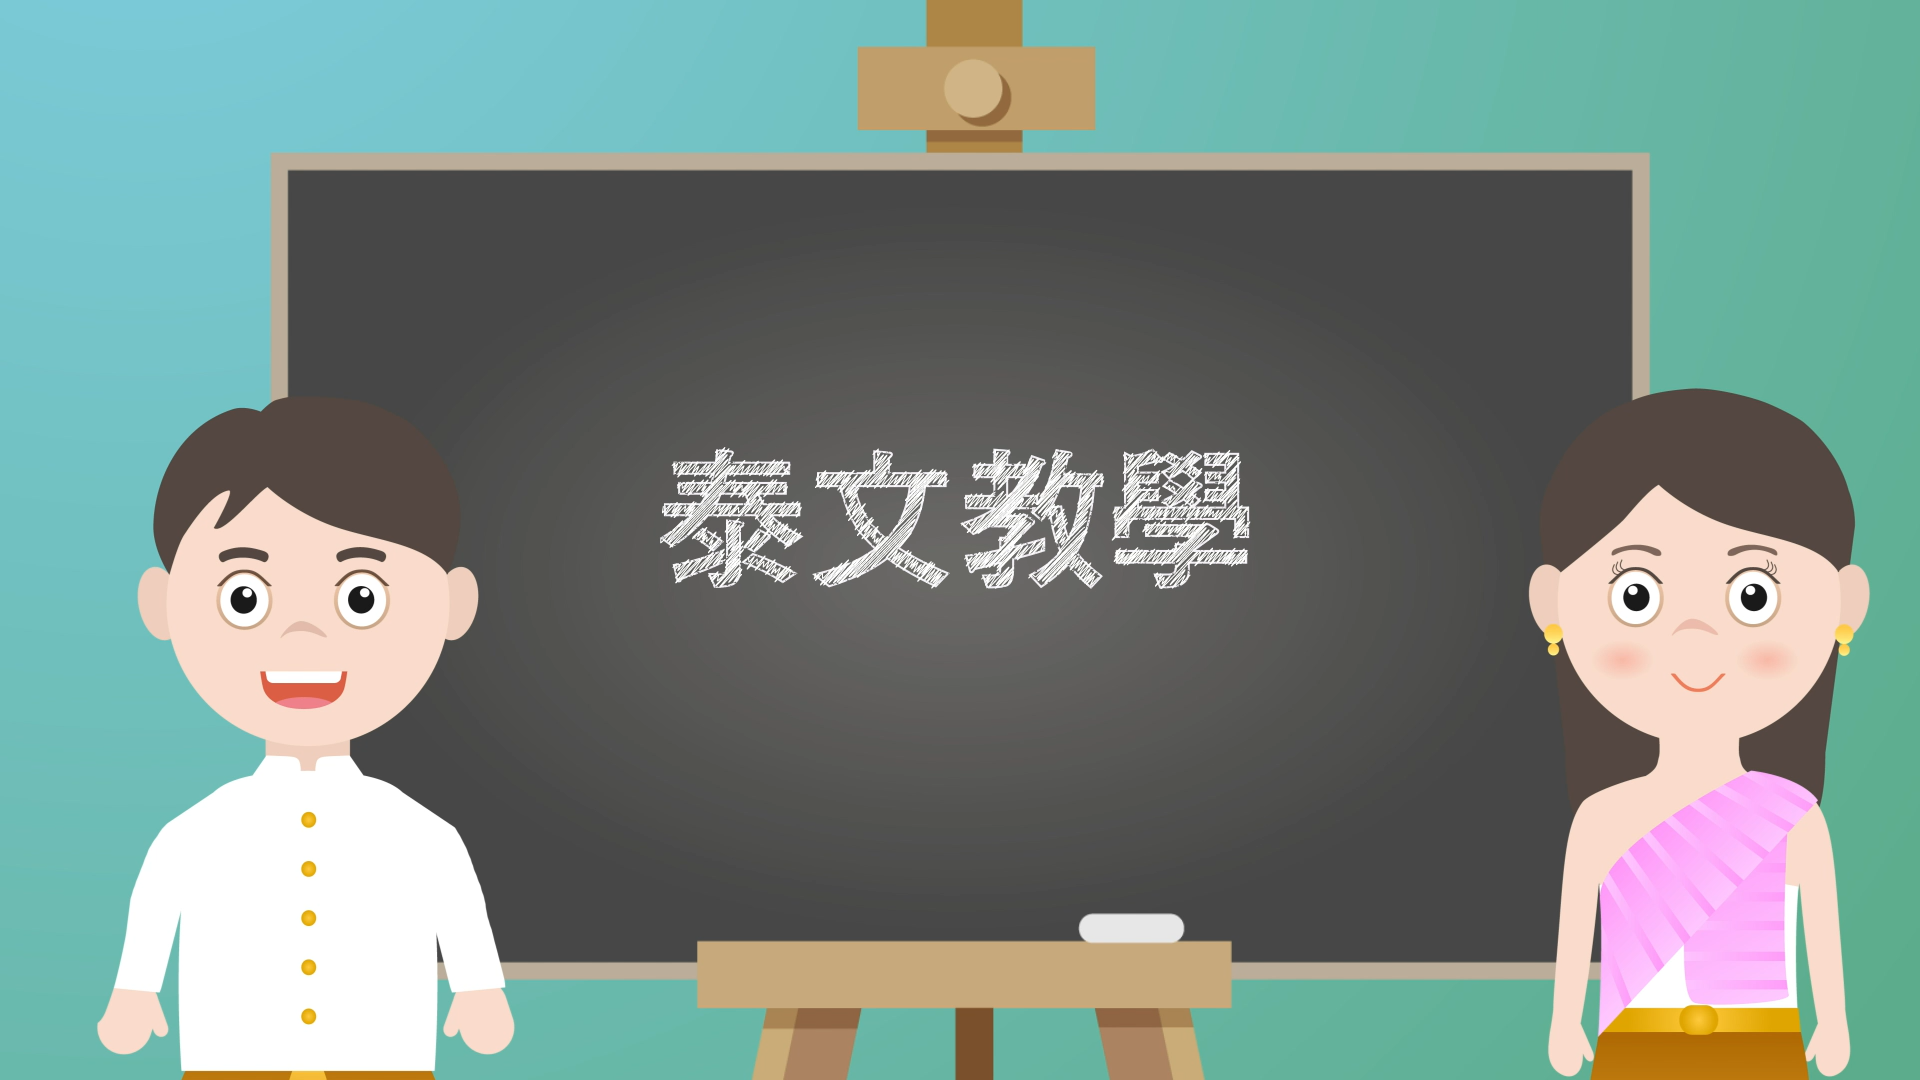 [ห้องเรียนภาษาต่างประเทศ] “สังเกตสีหน้าเป็นหนึ่งในหลักการตรวจสุขภาพตามหลักแพทย์แผนจีน” [20211127]